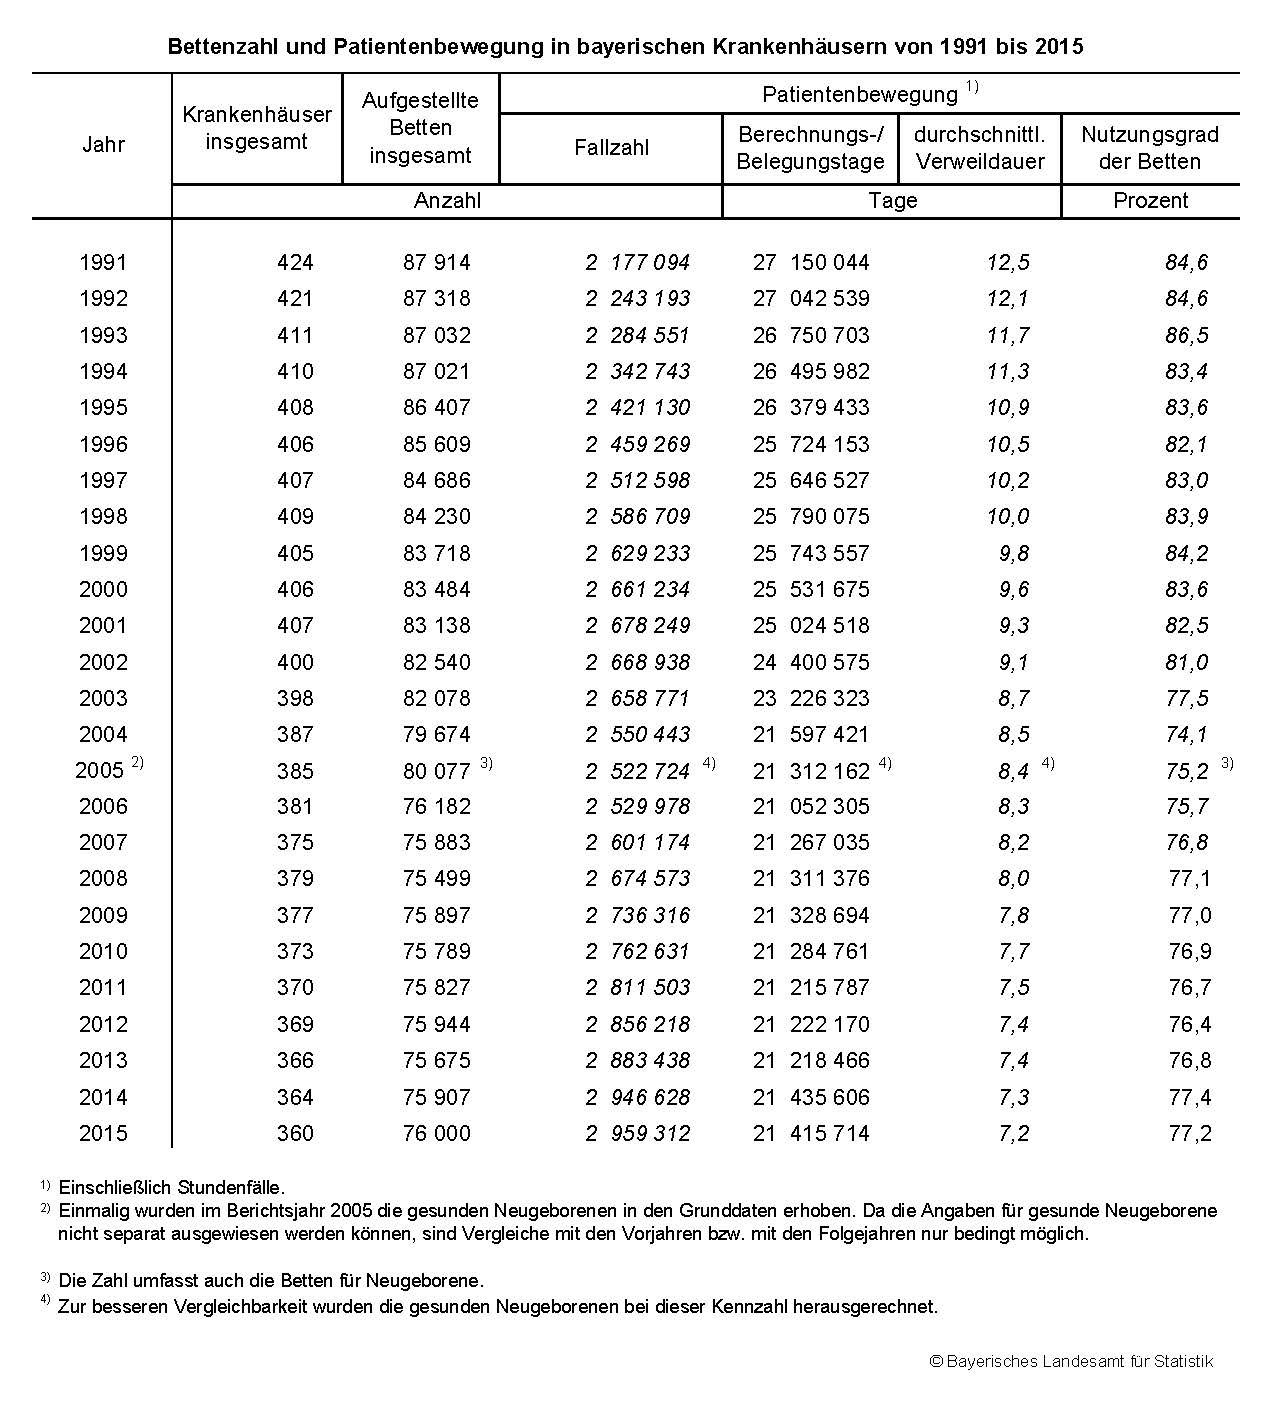 Bettenzahl und Patientenbewegung in bayerischen Krankenhäusern von 1991 bis 2015